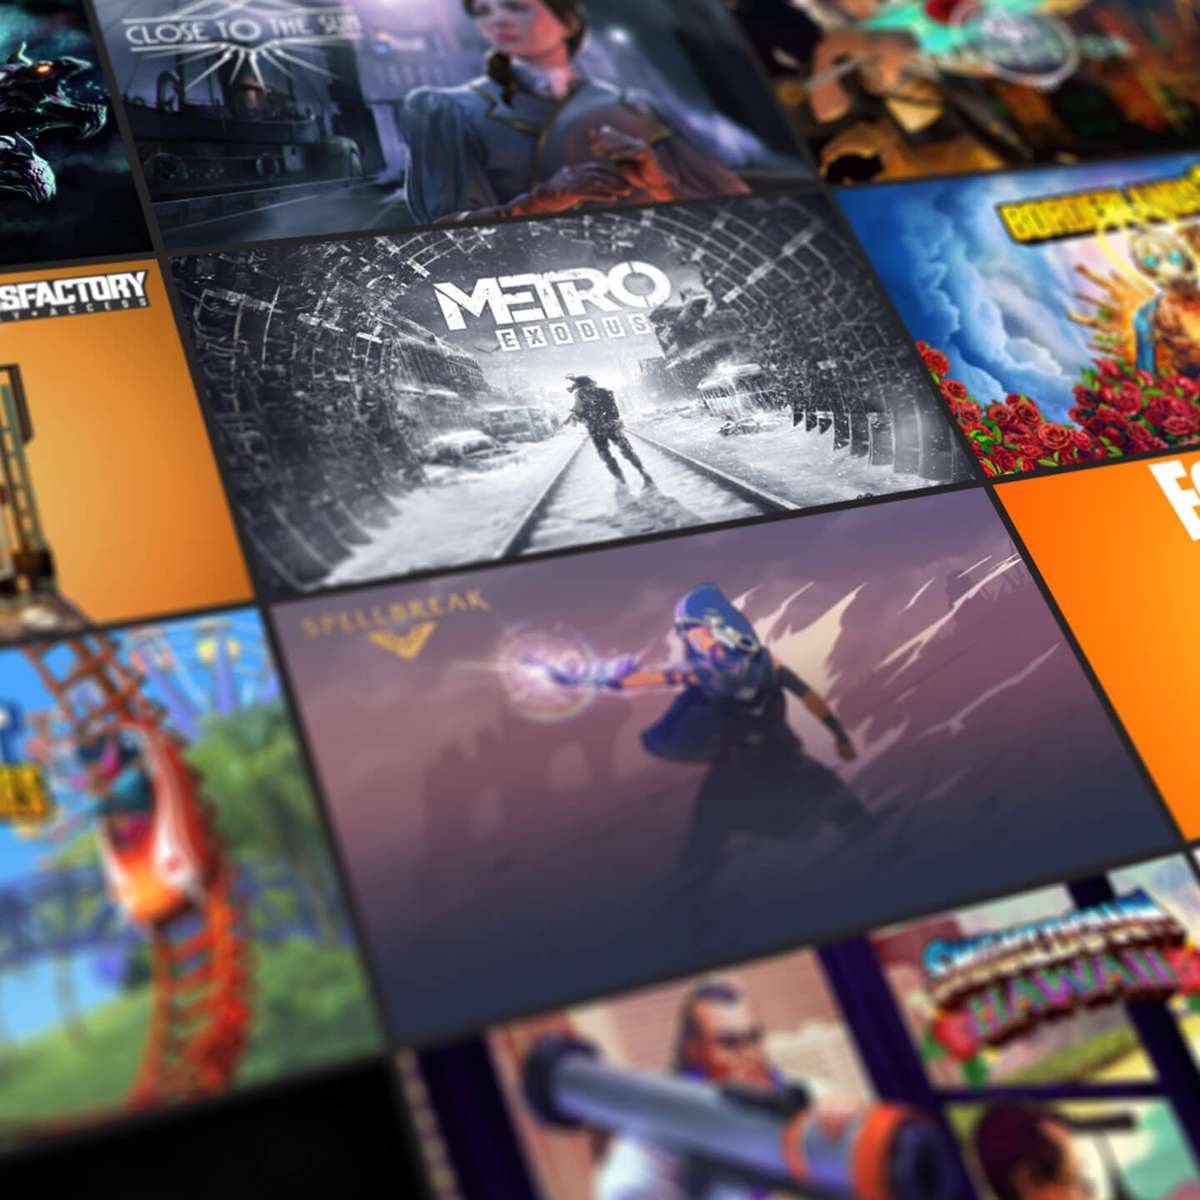 Metro: 2033 Redux é o sexto dos 15 jogos gratuitos da Epic Games Store no  fim de ano 